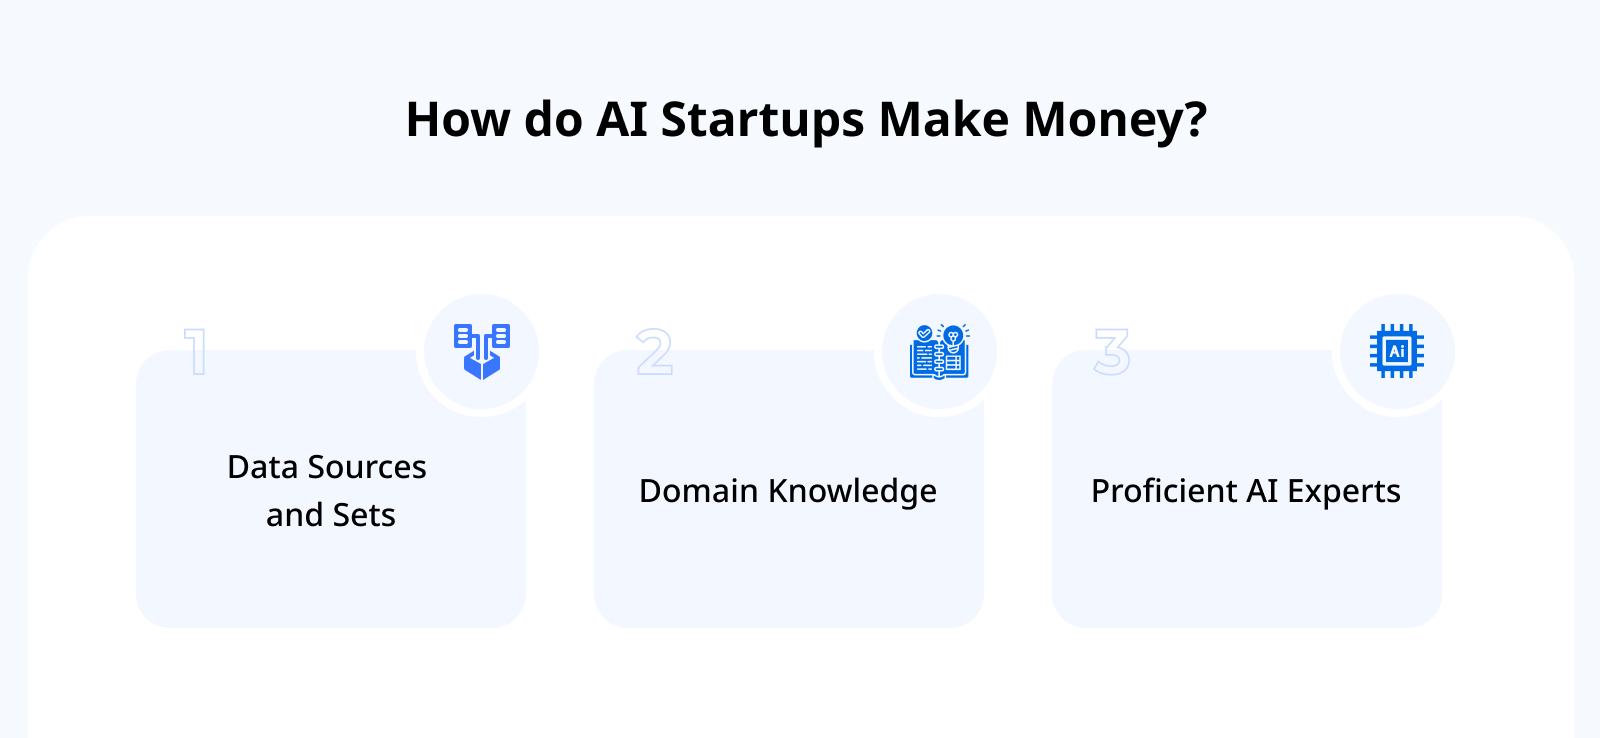 How do AI Startups Make Money